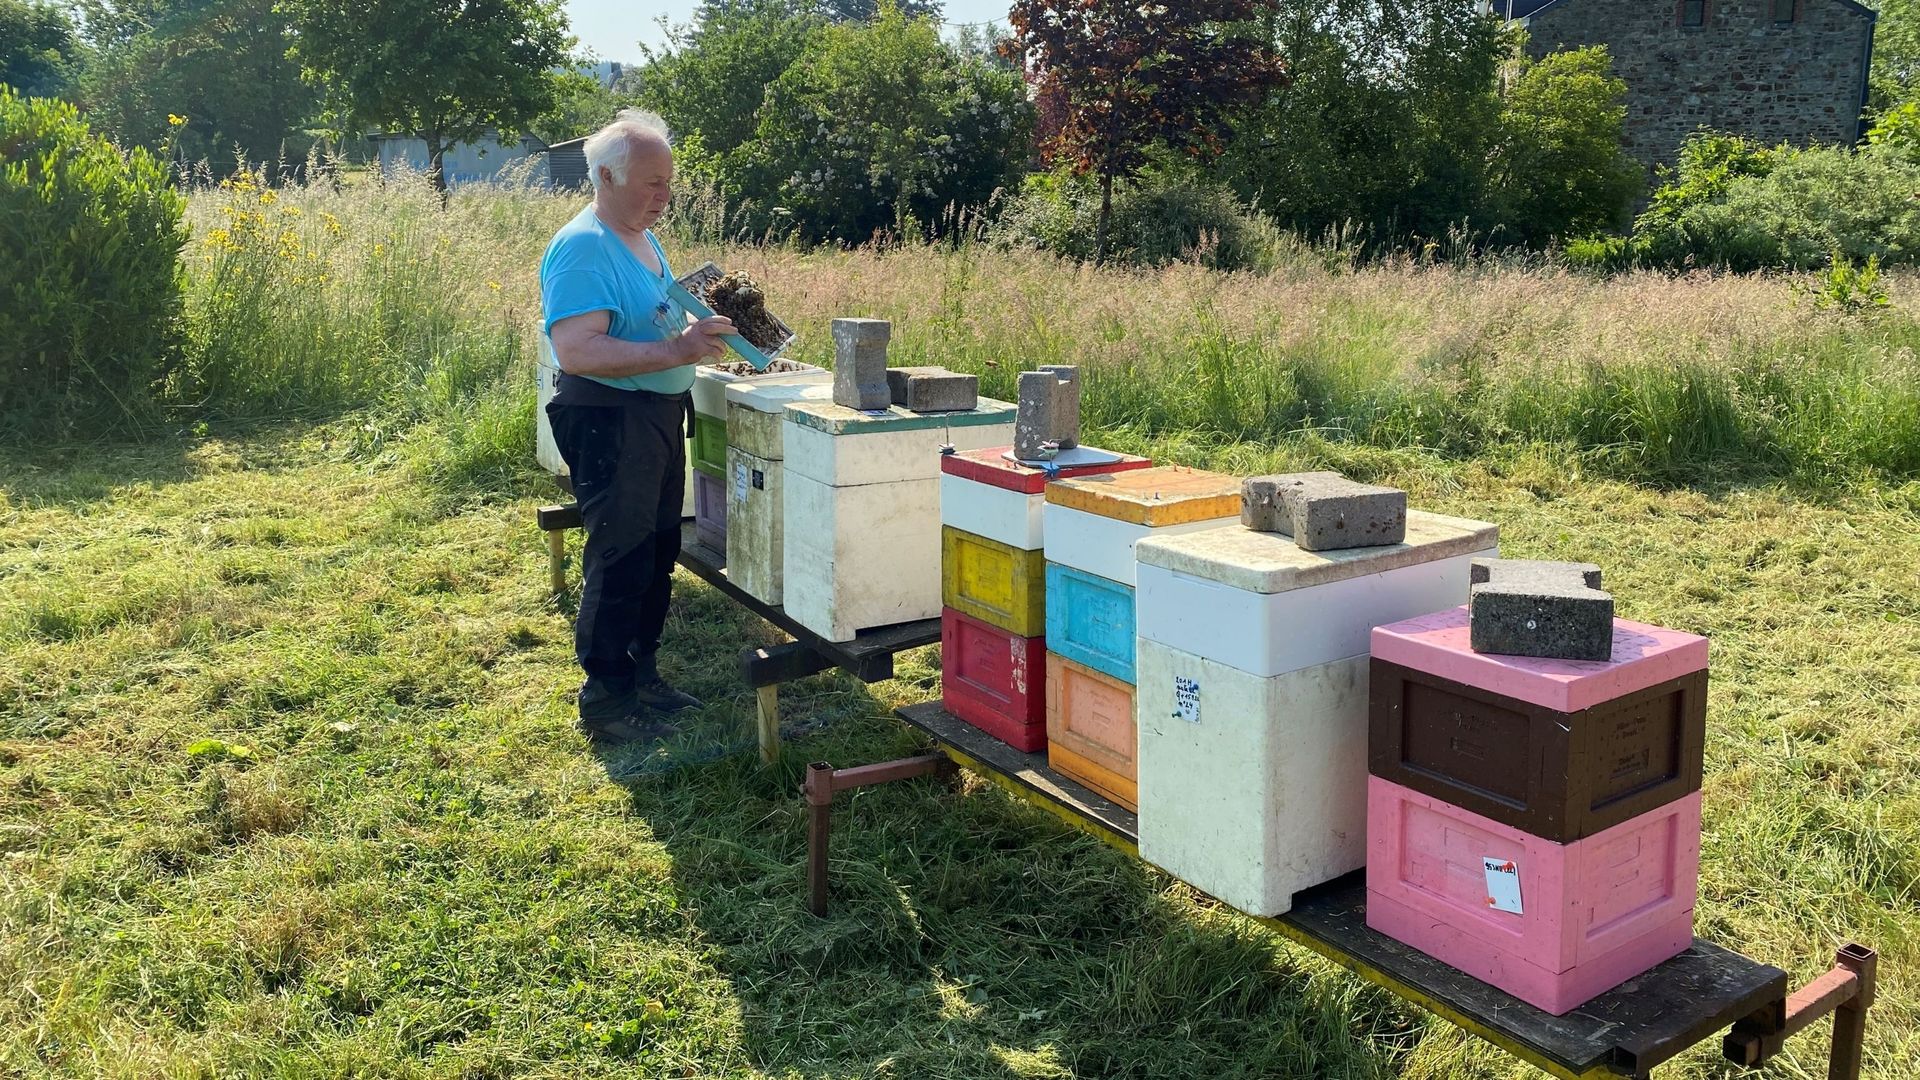 José Artus est apiculteur depuis l'enfance. Il possède une exploitation apicole d'une centaine de ruches